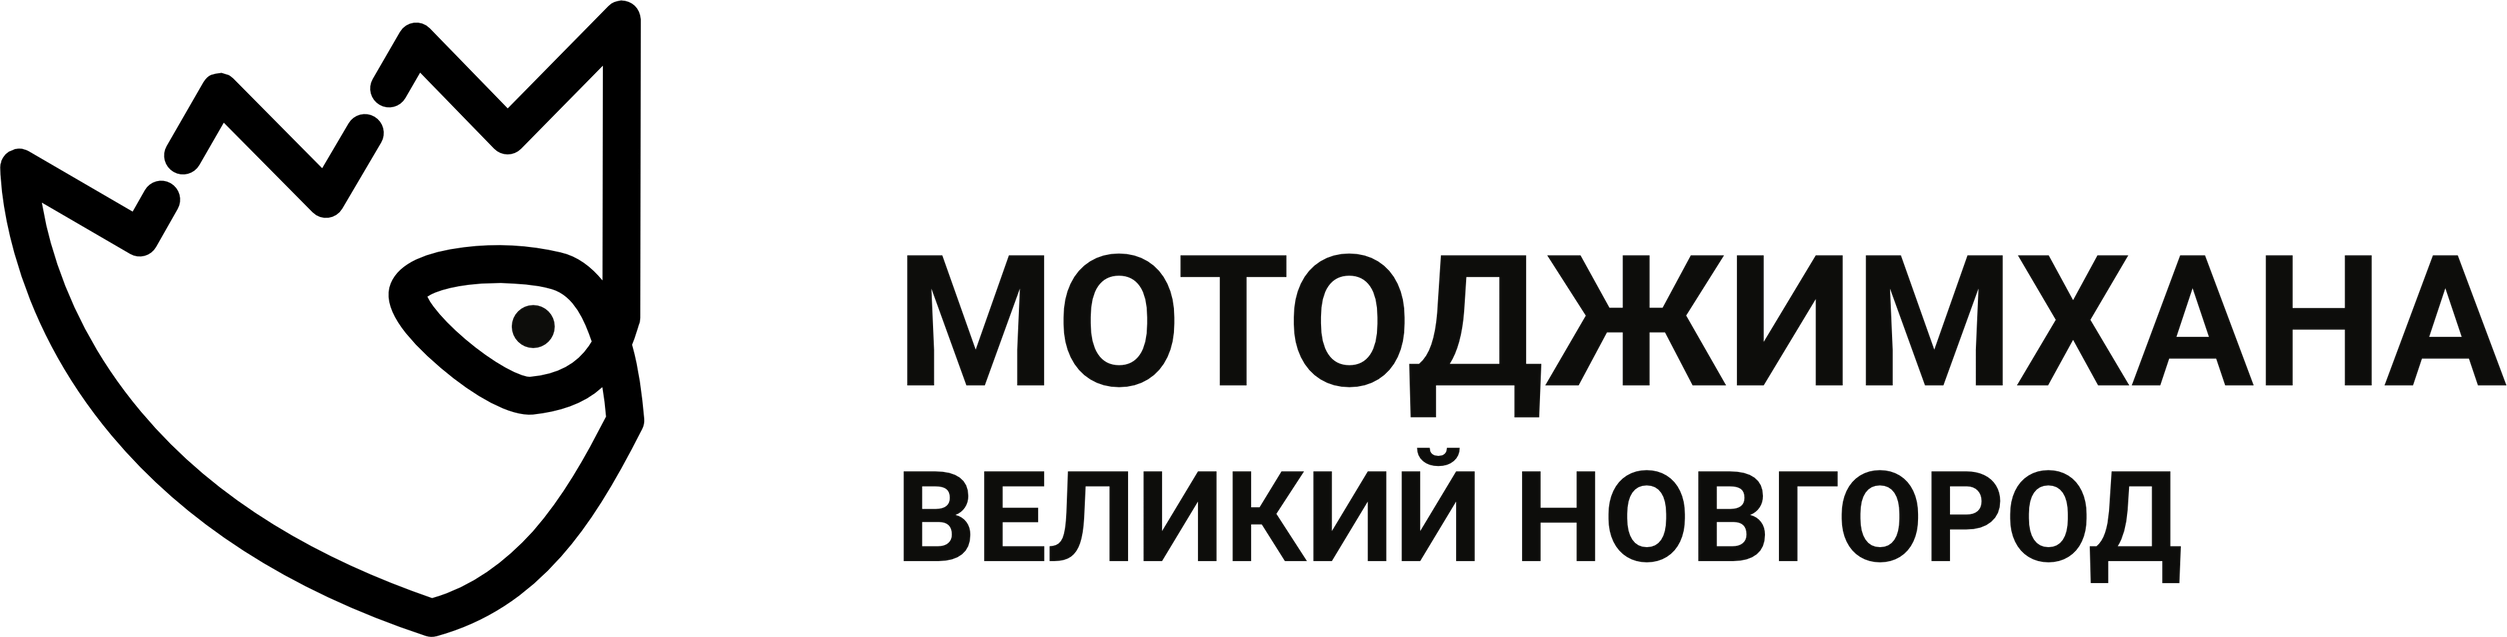 Логотип мотоджимхана-клуба